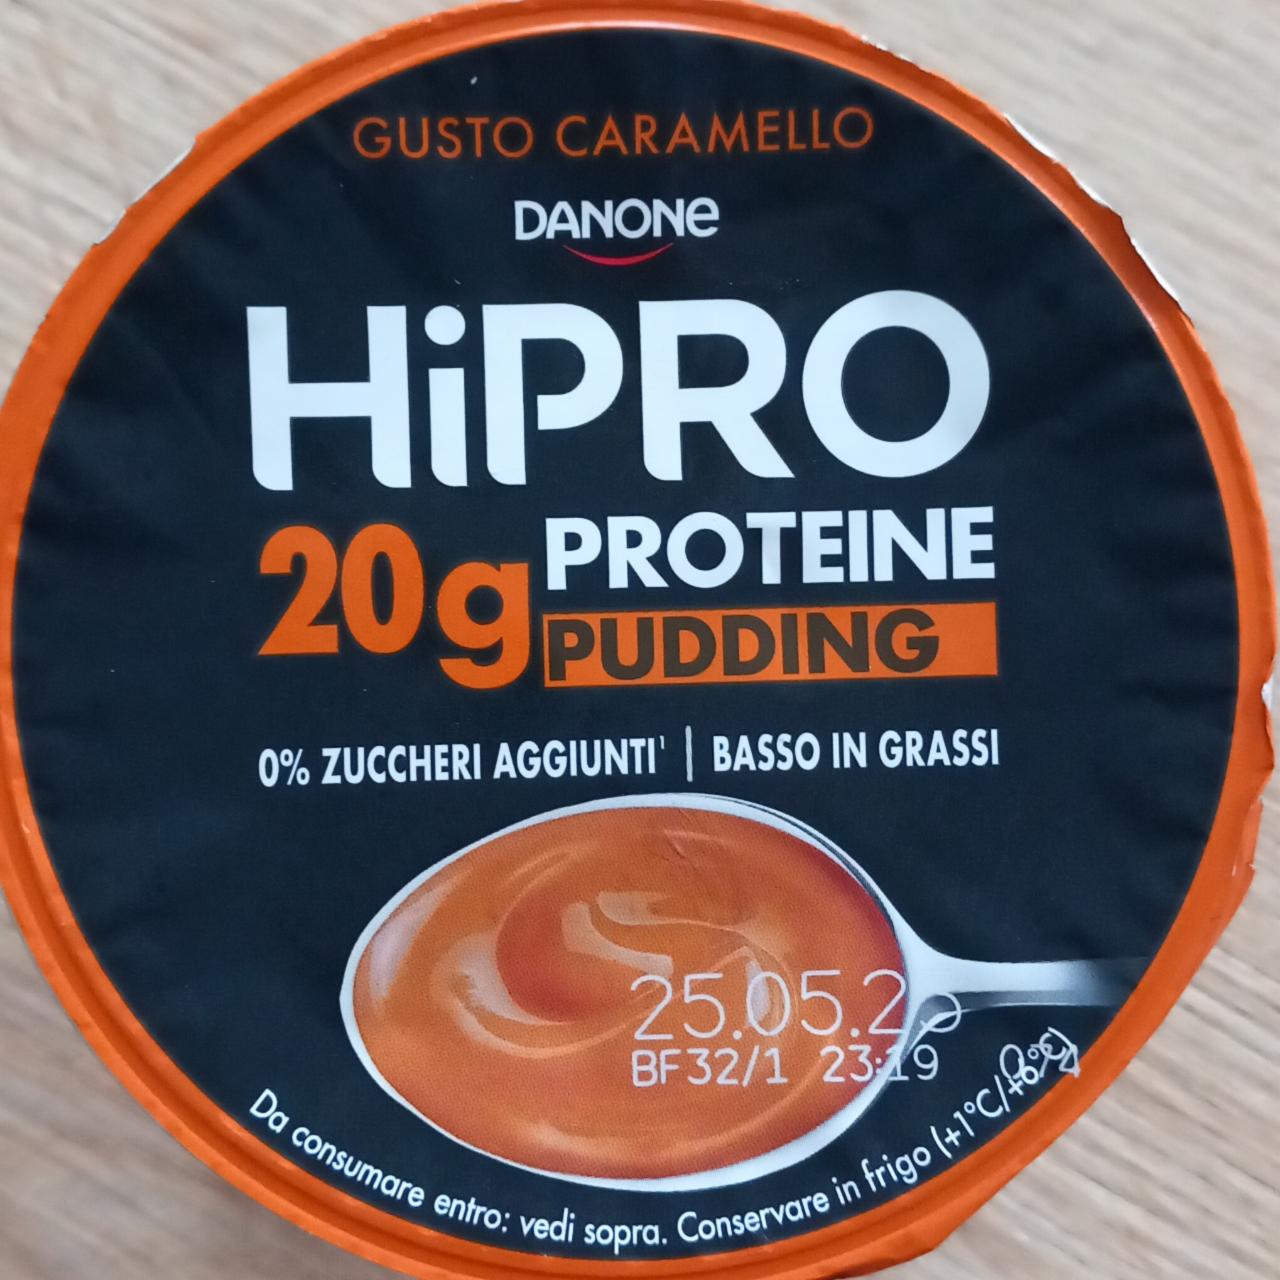 Fotografie - HiPro Proteine Pudding Gusto Caramello Danone